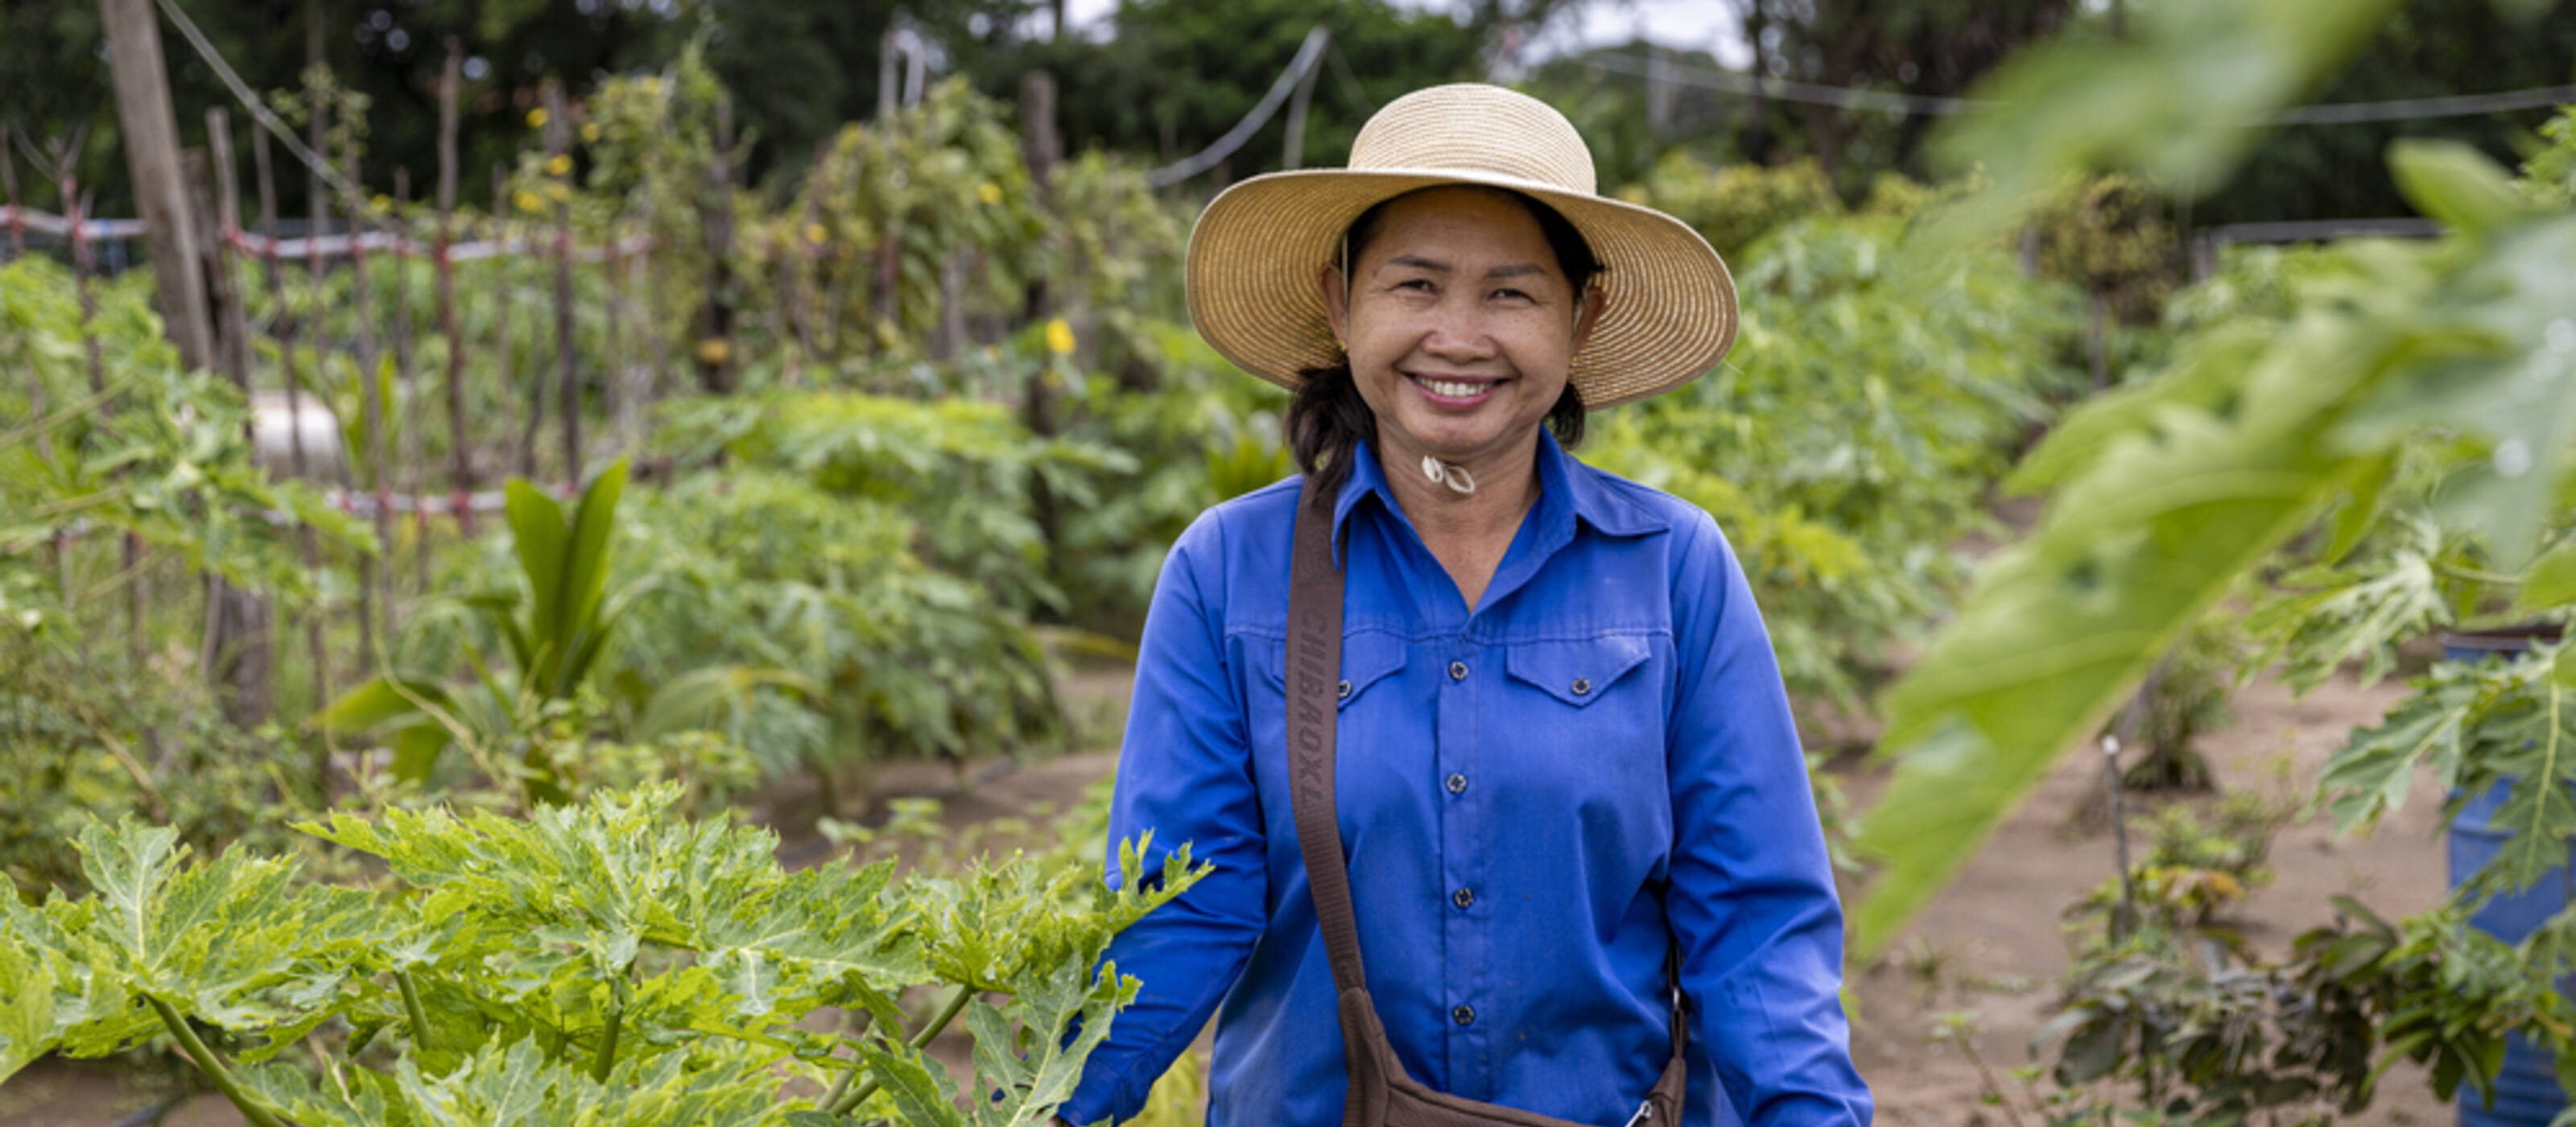 Auparavant, Savoeuy Phon ne cultivait que du riz, ce qui était insuffisant pour vivre. Aujourd’hui, elle peut faire d’autres choix, mais elle doit aussi relever de nouveaux défis.